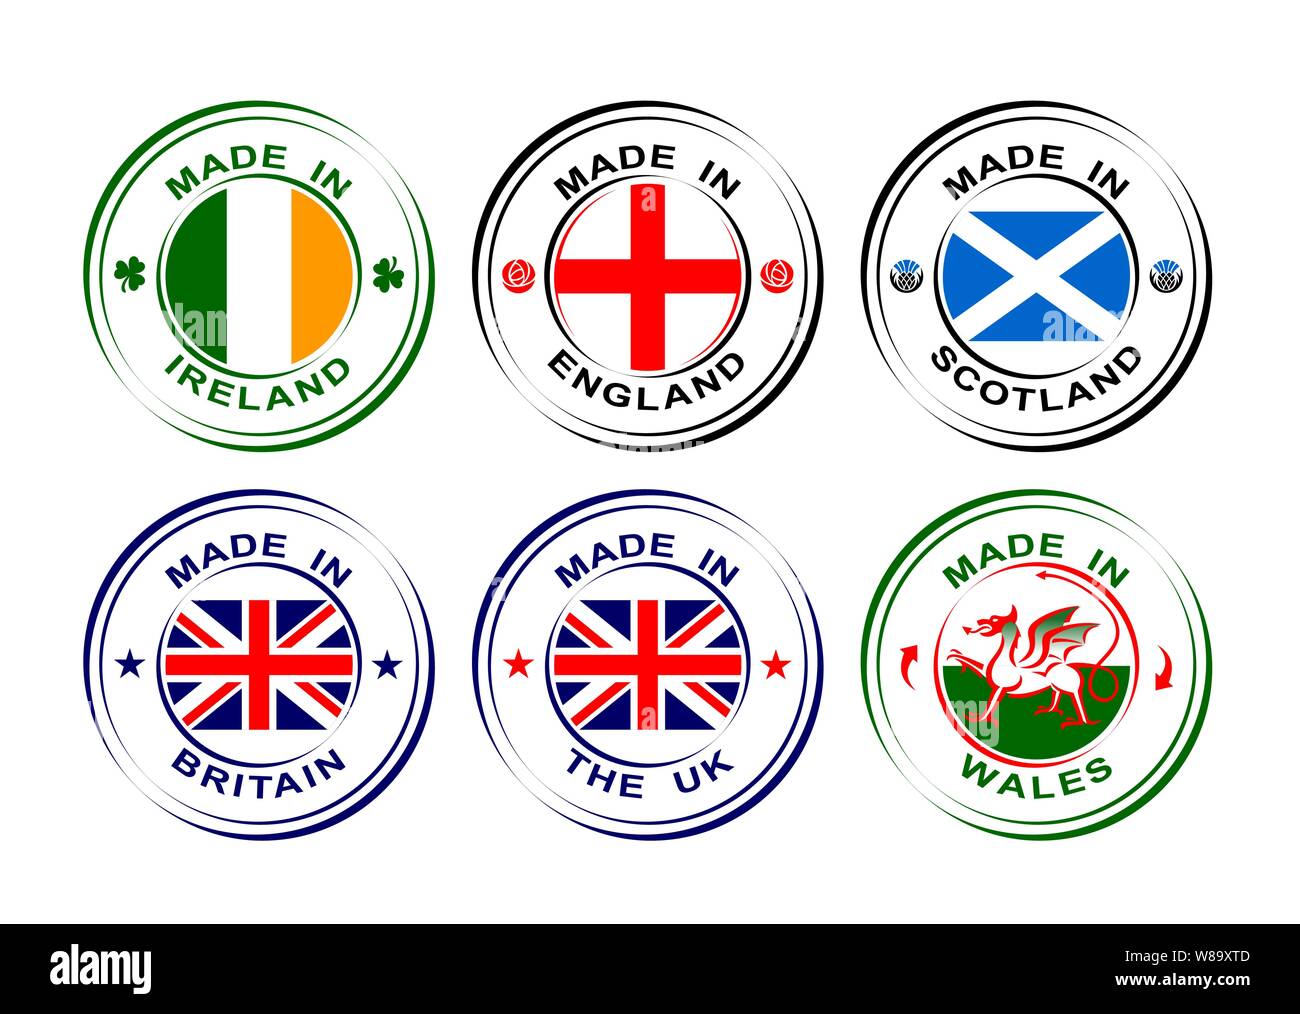 Im Vereinigten Königreich, Großbritannien mit Fahne, Wales mit Drachen, Schottland mit Distel, England mit Rose, Irland mit Shamrock Stock Vektor